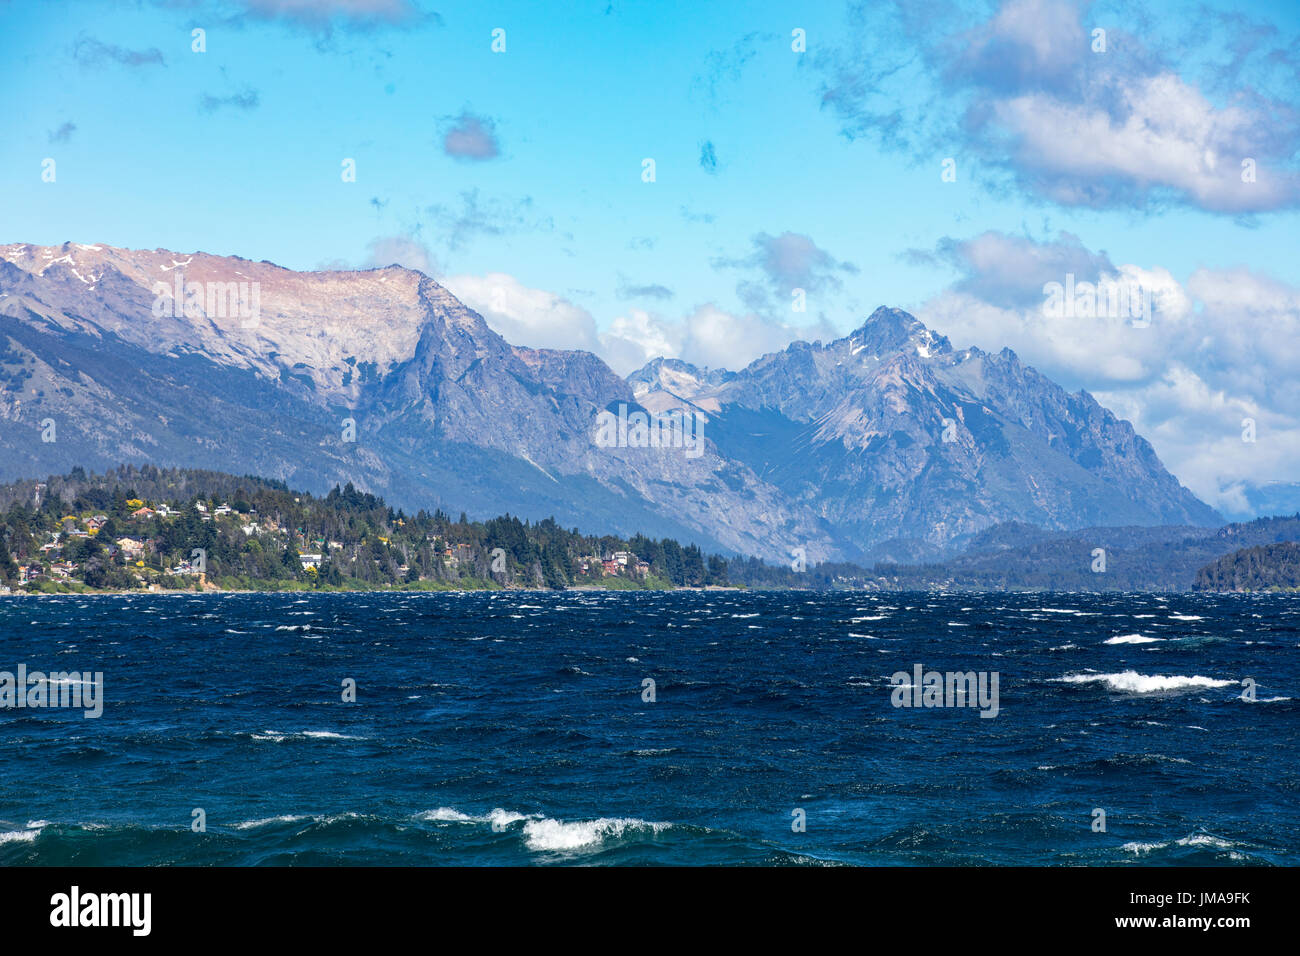 Der Nahuel Huapi See mit den Bergen im Hintergrund. Bariloche, Argentinien. Stockfoto